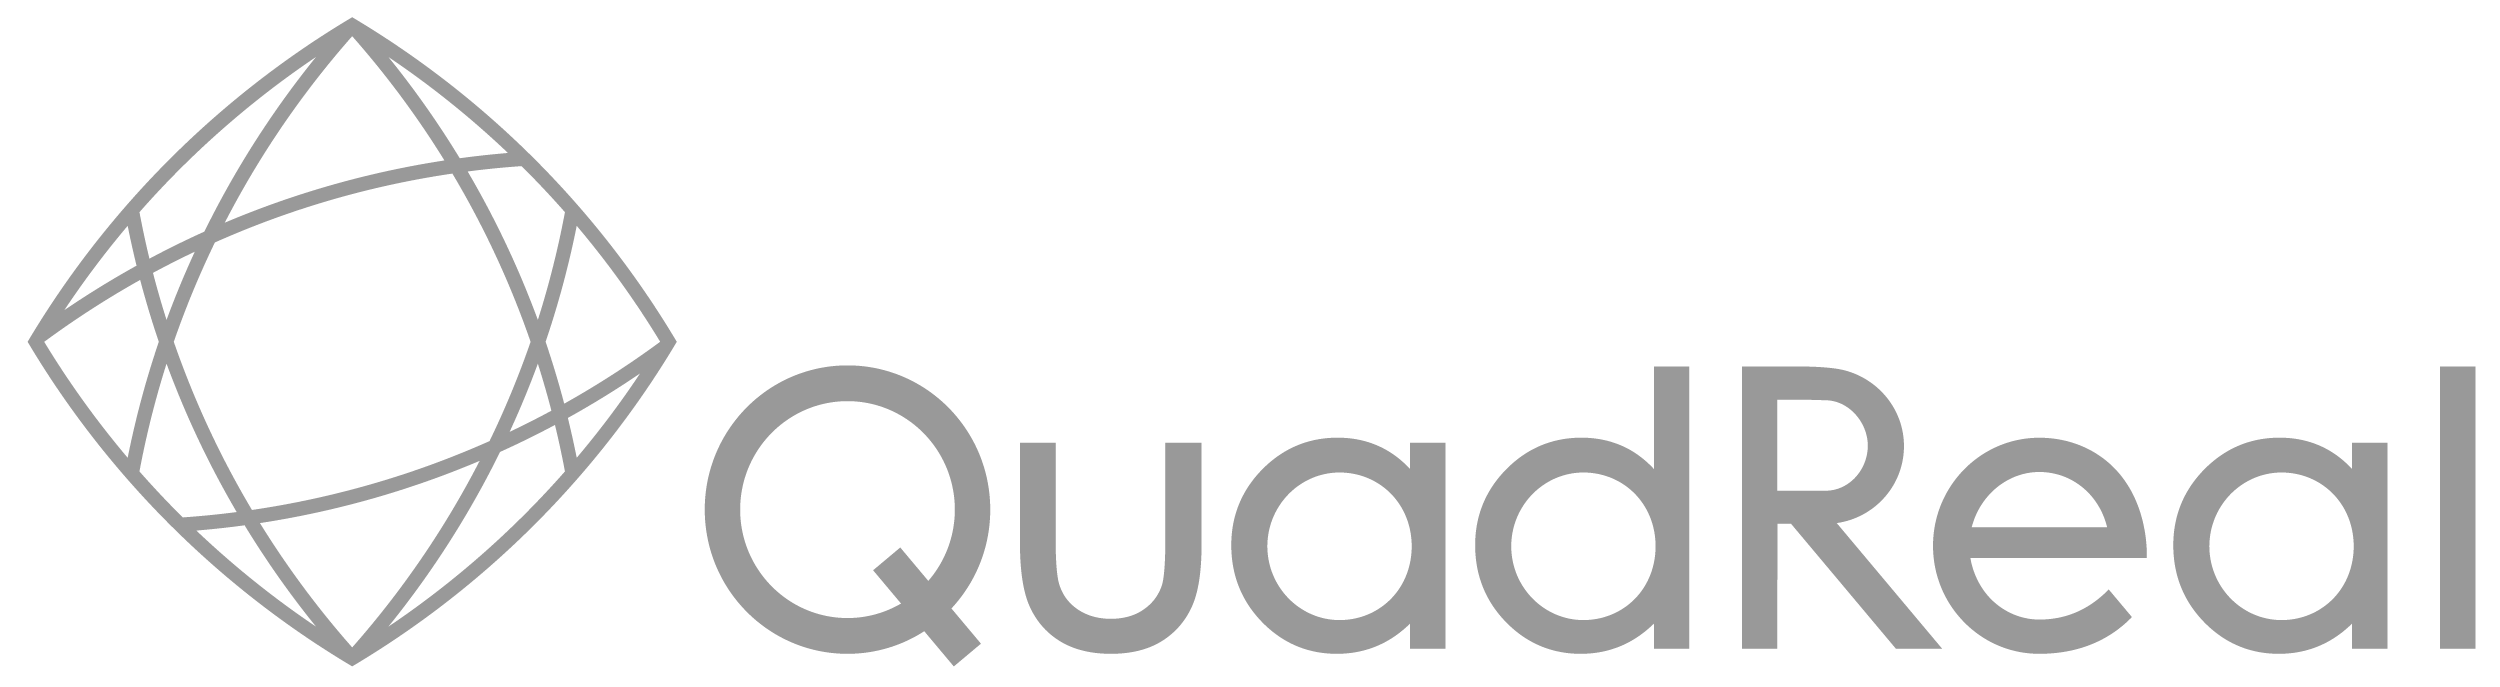 quadreal logo